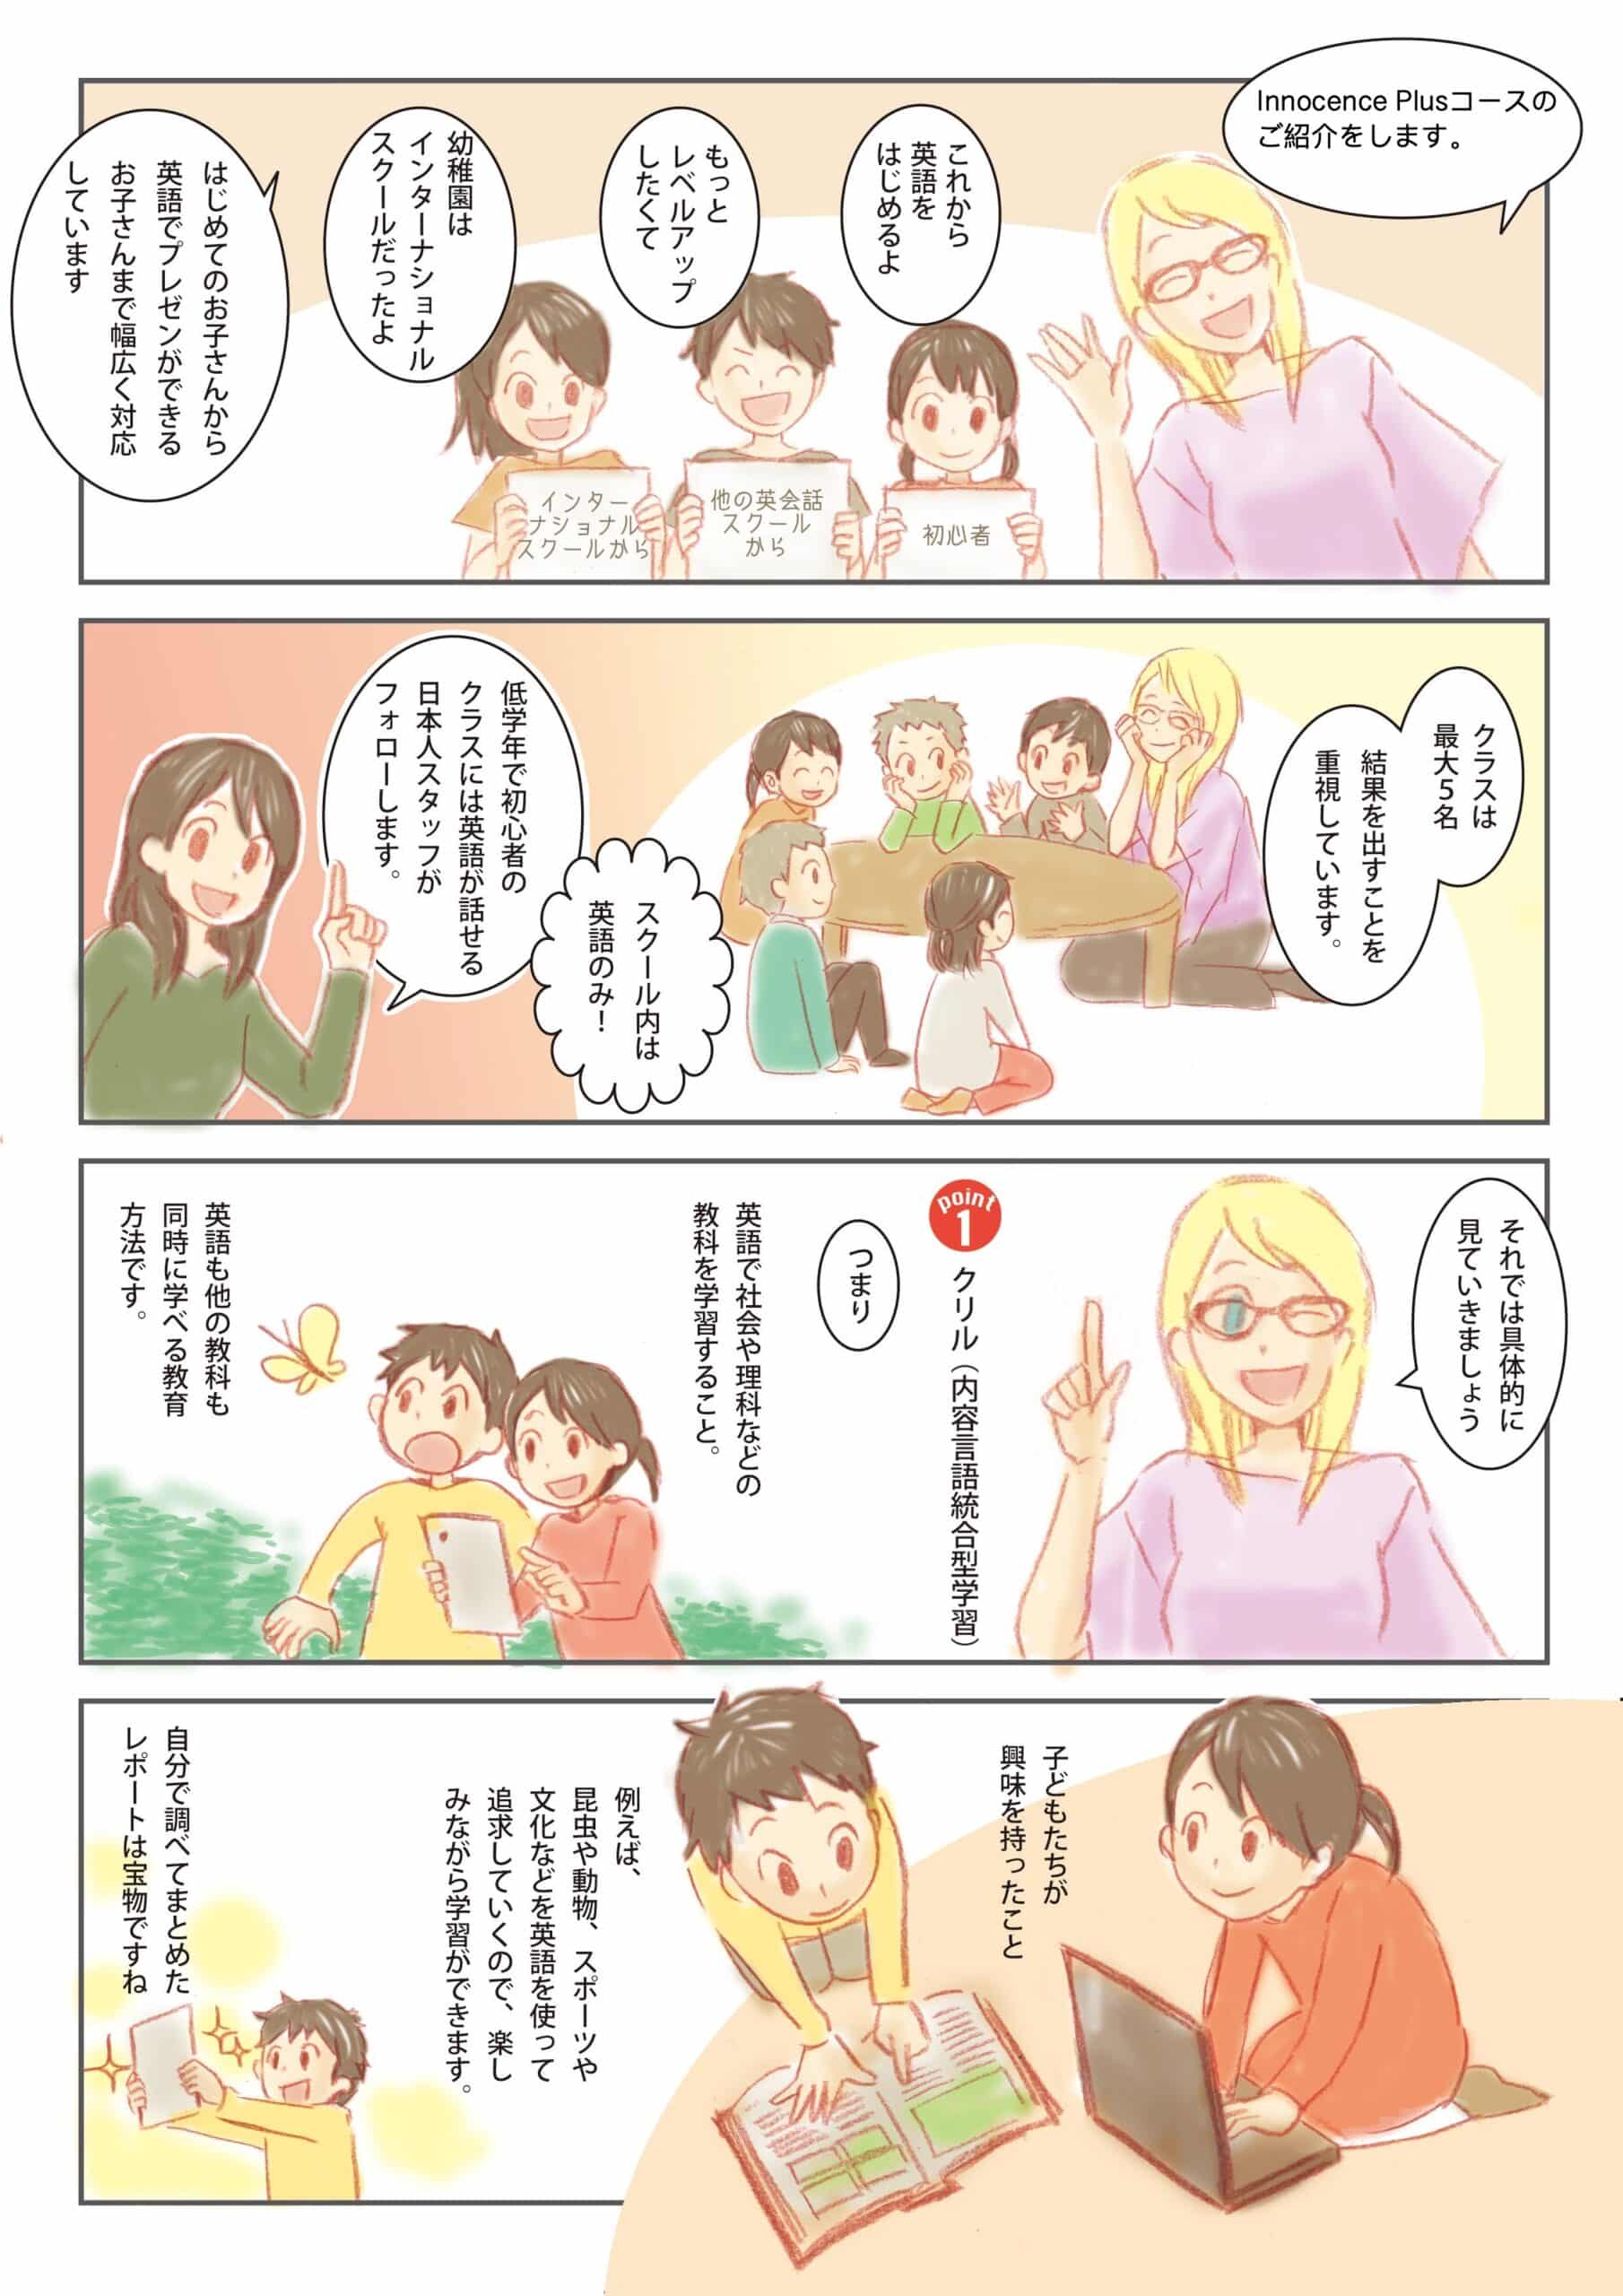 仙台の英会話イノセンスプラスを漫画で紹介しています。１